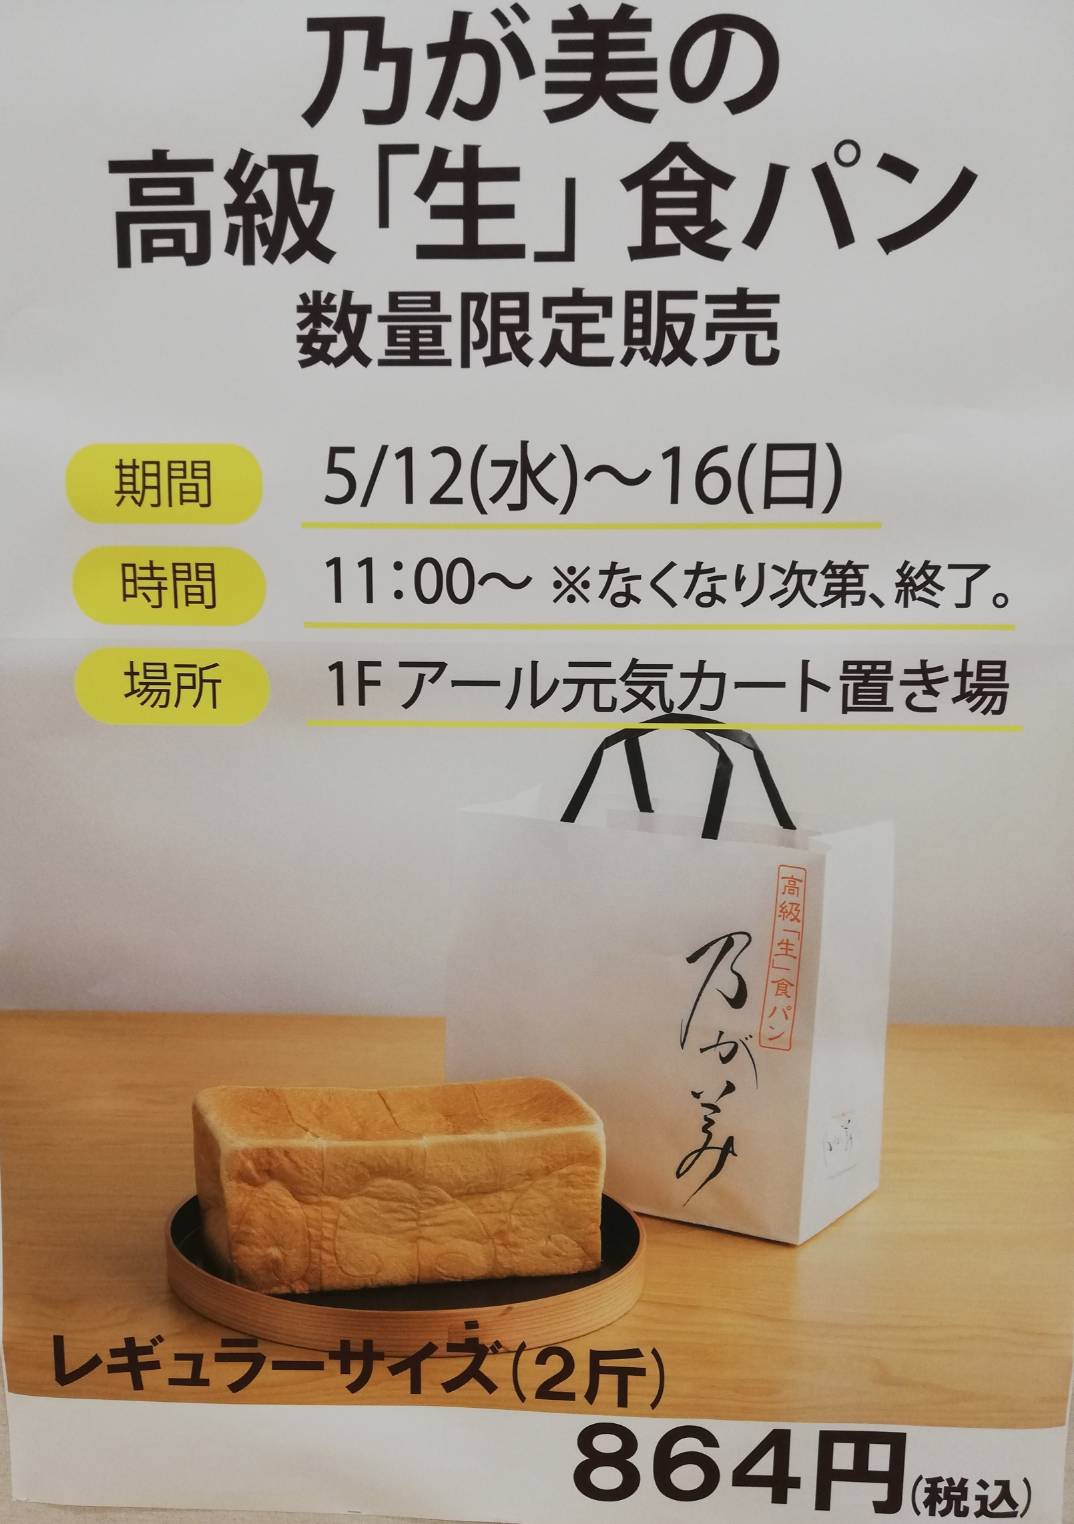 アクロスモール新鎌ヶ谷乃が美高級食パン